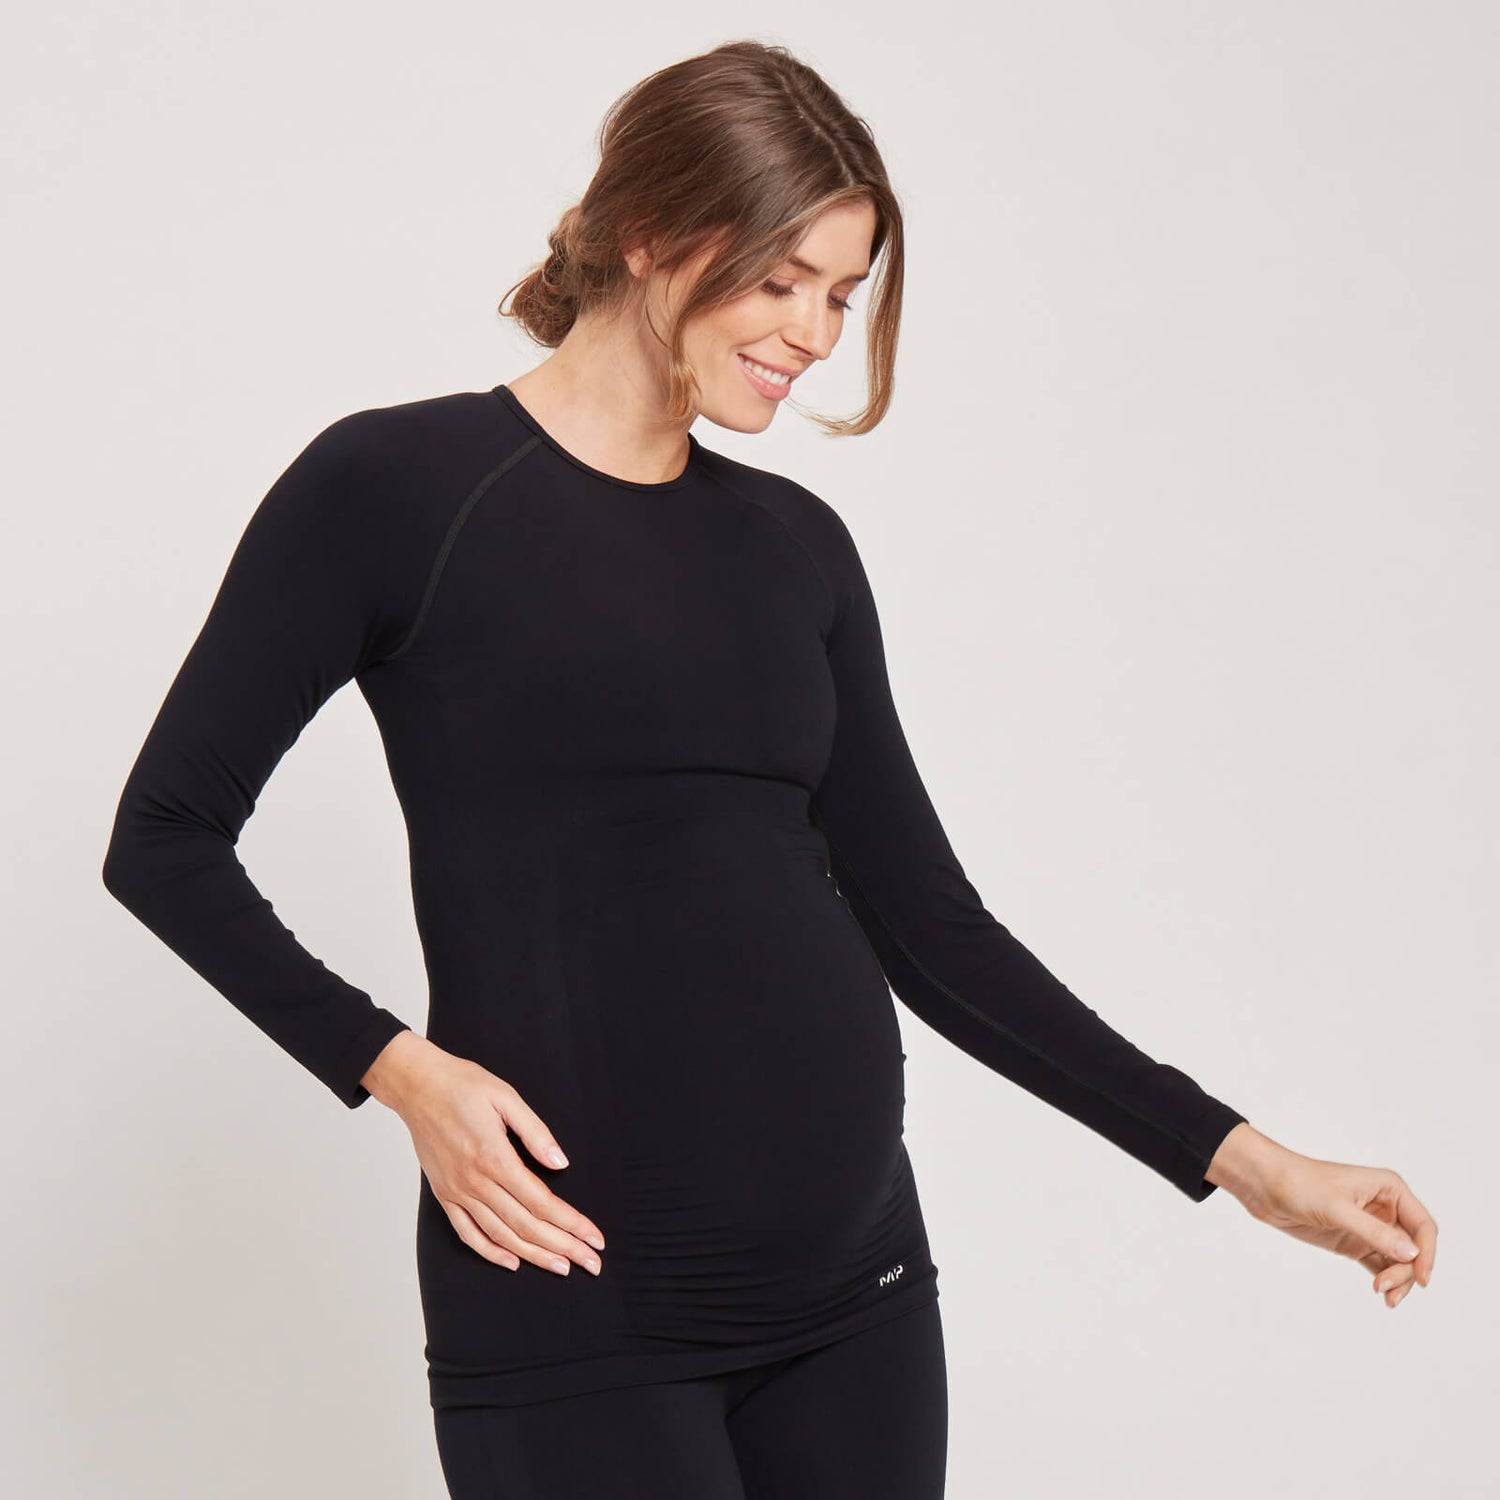 Γυναικείο Μακρυμάνικο Μπλουζάκι Εγκυμοσύνης MP Χωρίς Ραφές - Μαύρο - XS